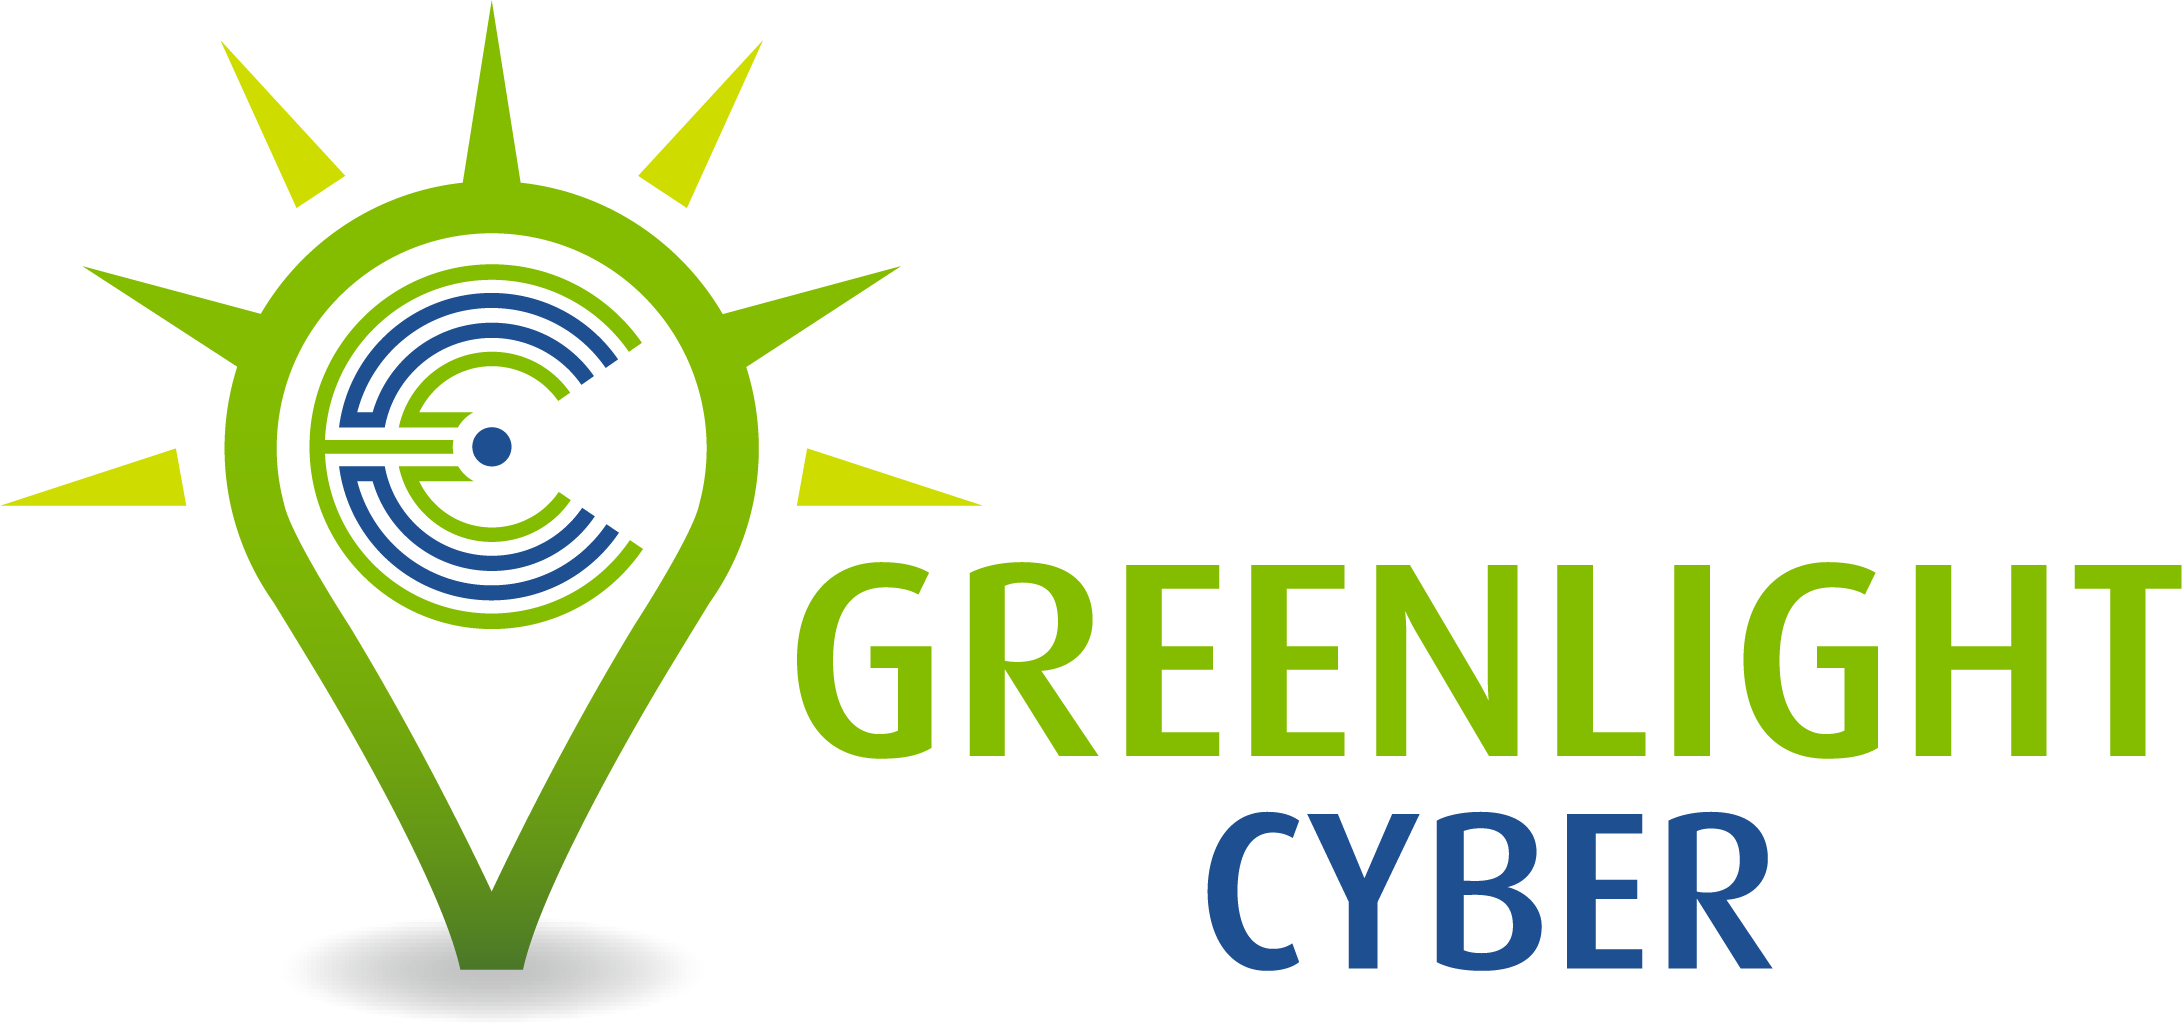 Greenlight Cyber